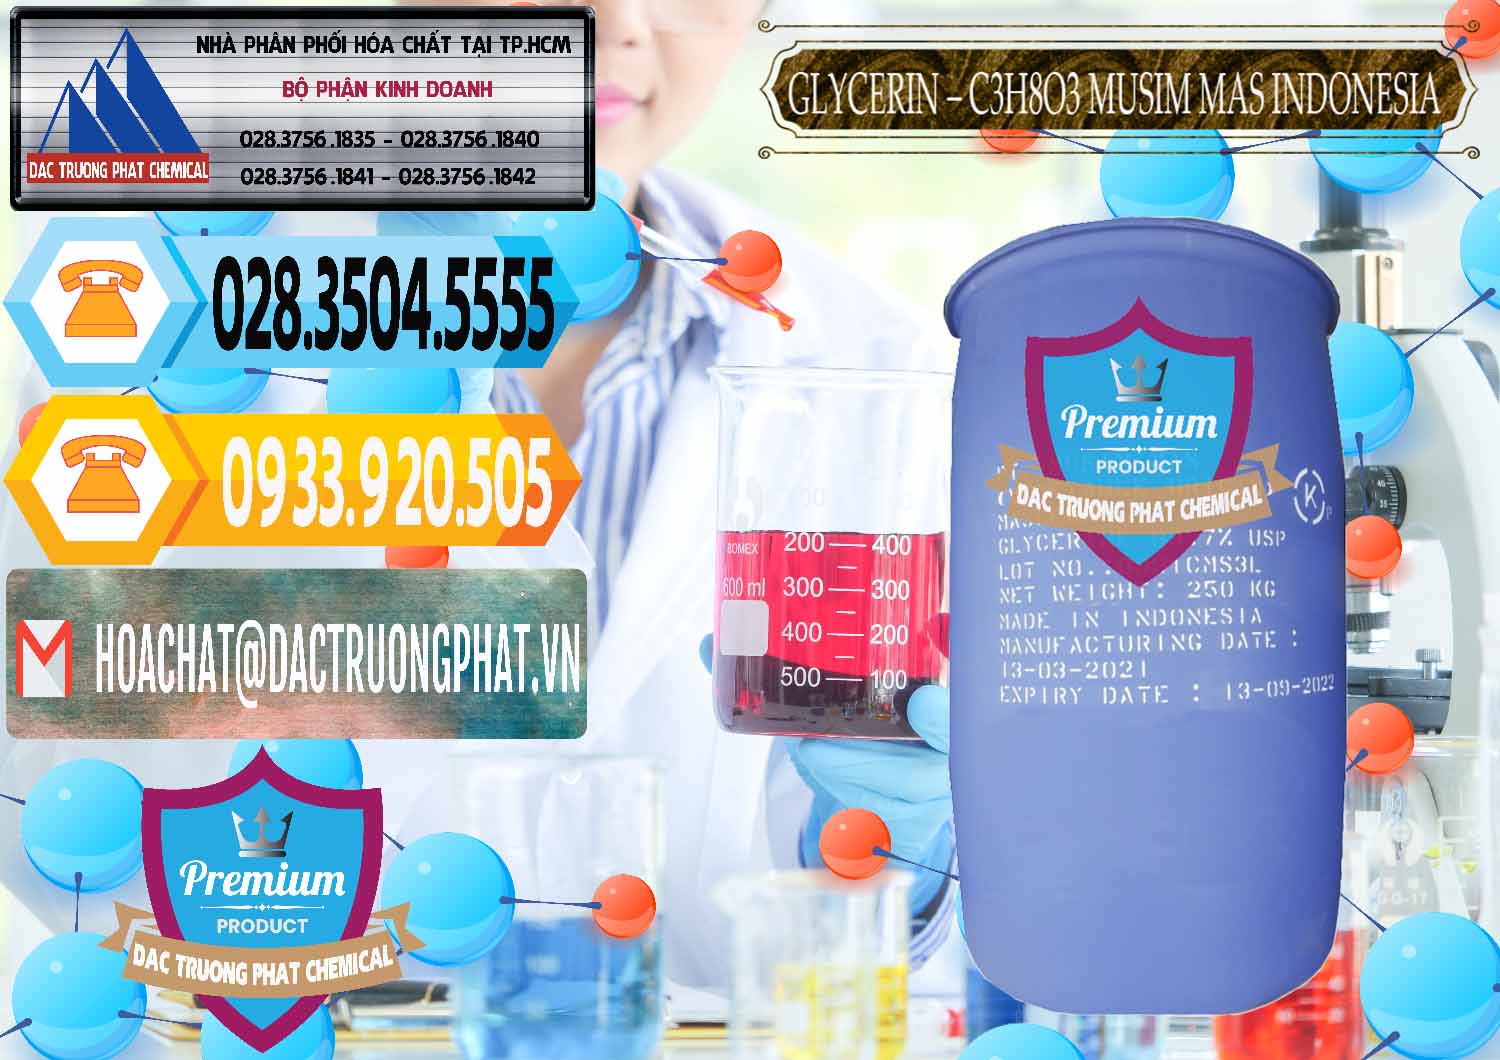 Công ty cung cấp _ bán Glycerin – C3H8O3 99.7% Musim Mas Indonesia - 0272 - Cty cung cấp và phân phối hóa chất tại TP.HCM - hoachattayrua.net